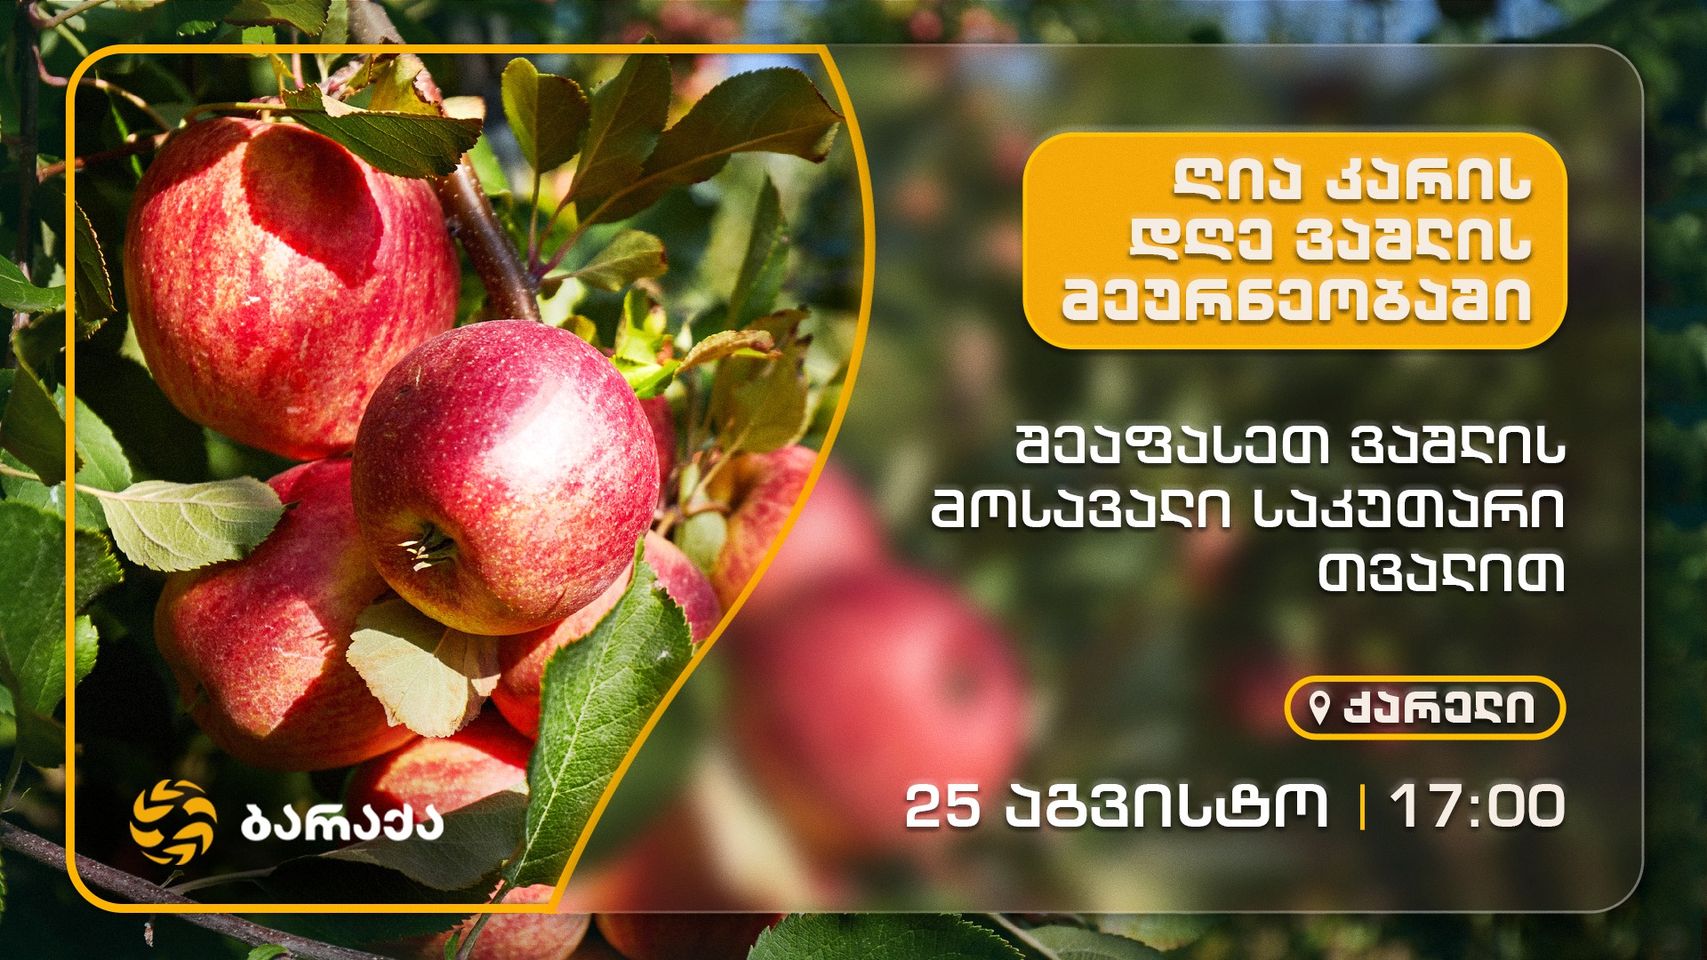 კომპანია “ბარაქა” 25 აგვისტოს, 17:00 საათზე ვაშლის წარმოებით დაკავებული ფერმერებისთვის ღია კარის დღეს აწყობს ქარელში